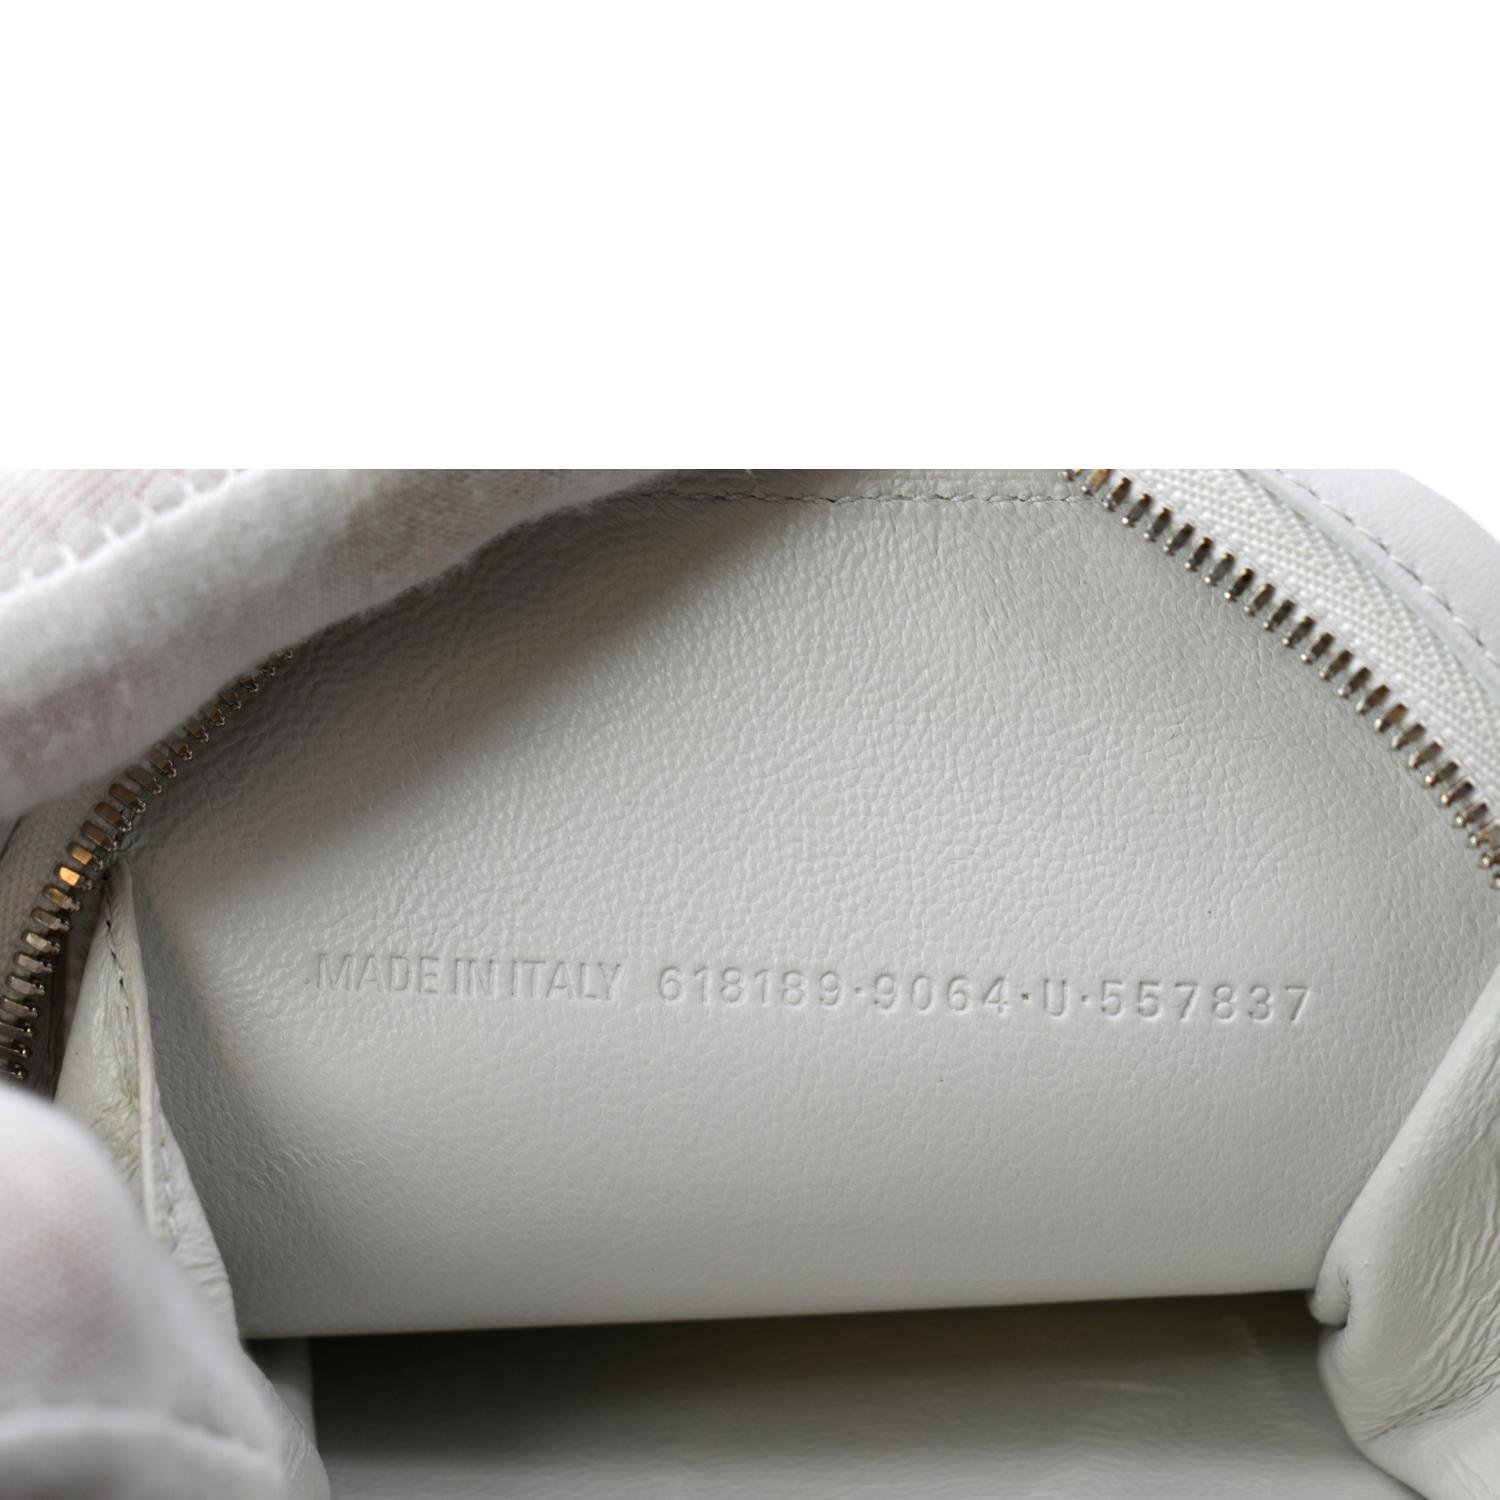 Balenciaga Shopping Phone Bag On Strap in Gray